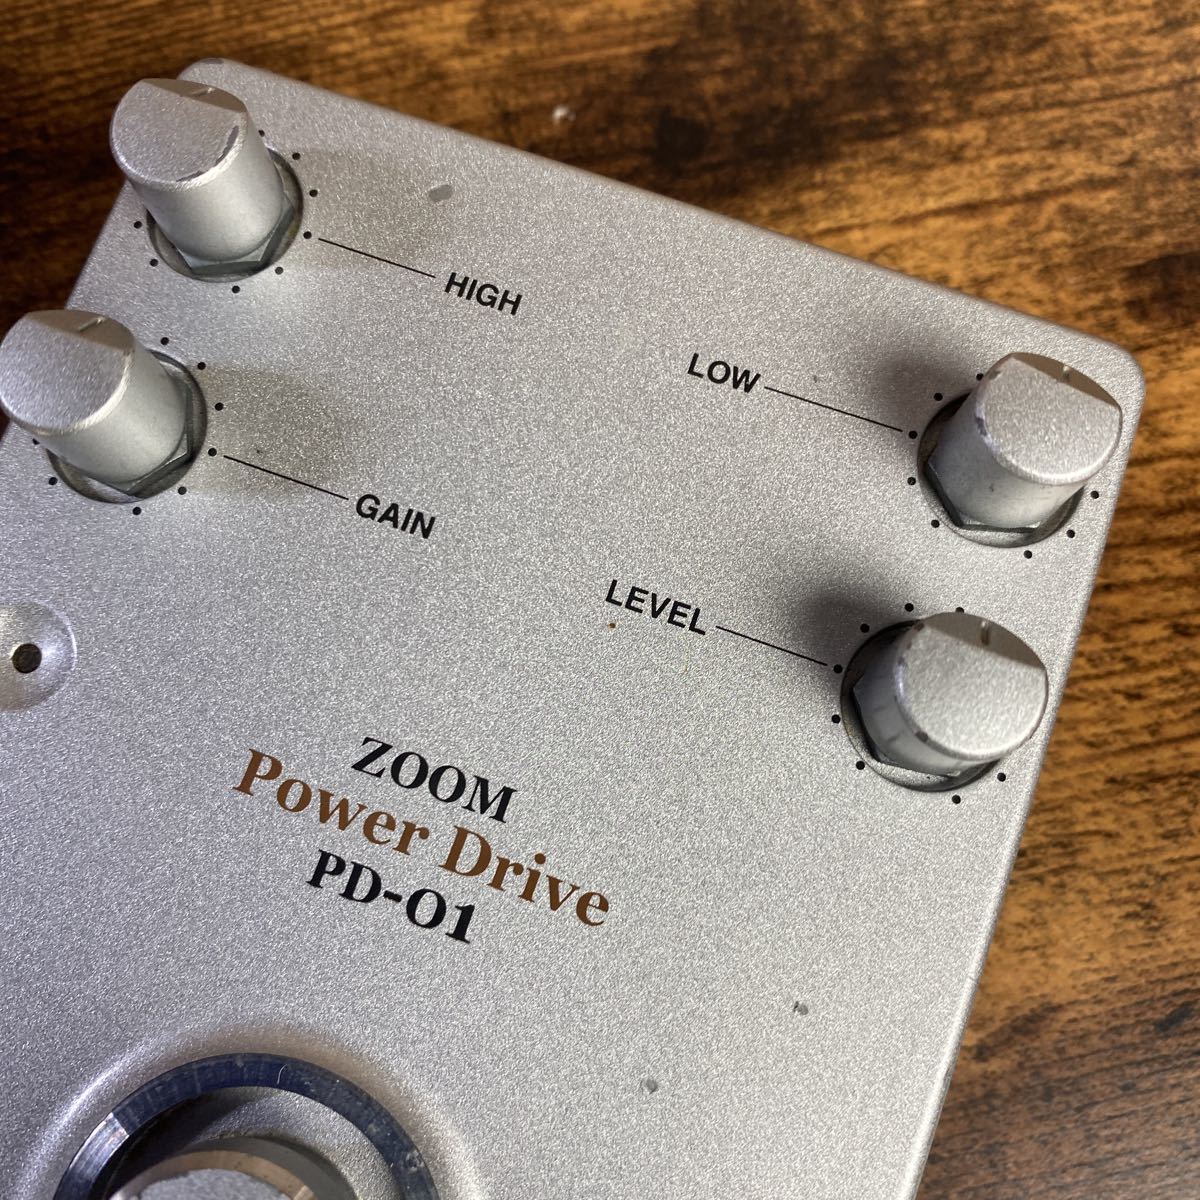 ZOOM PD-01 Power Drive オーバードライブ